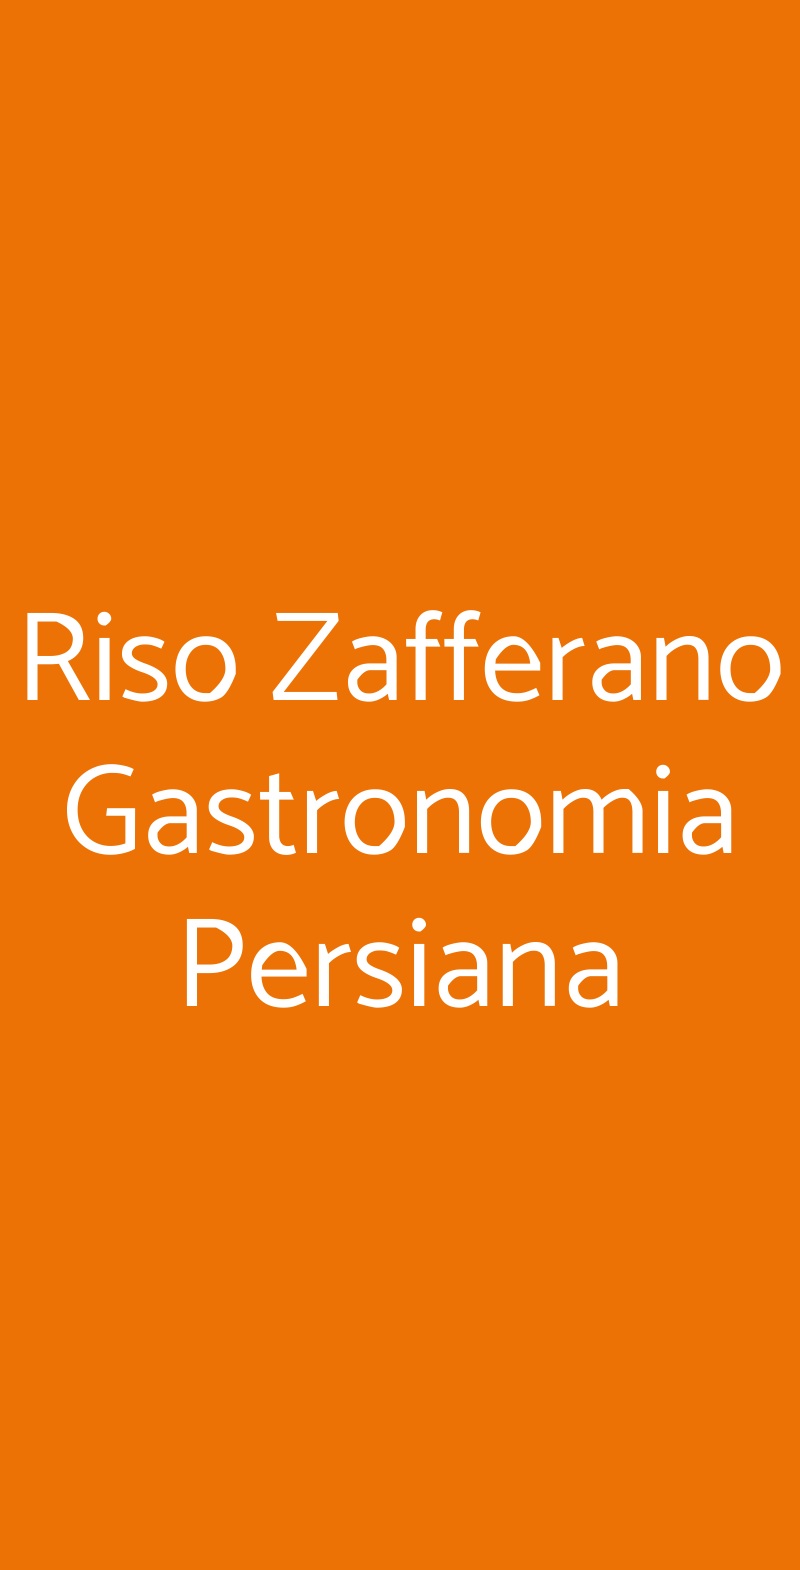 Riso Zafferano Gastronomia Persiana Torino menù 1 pagina